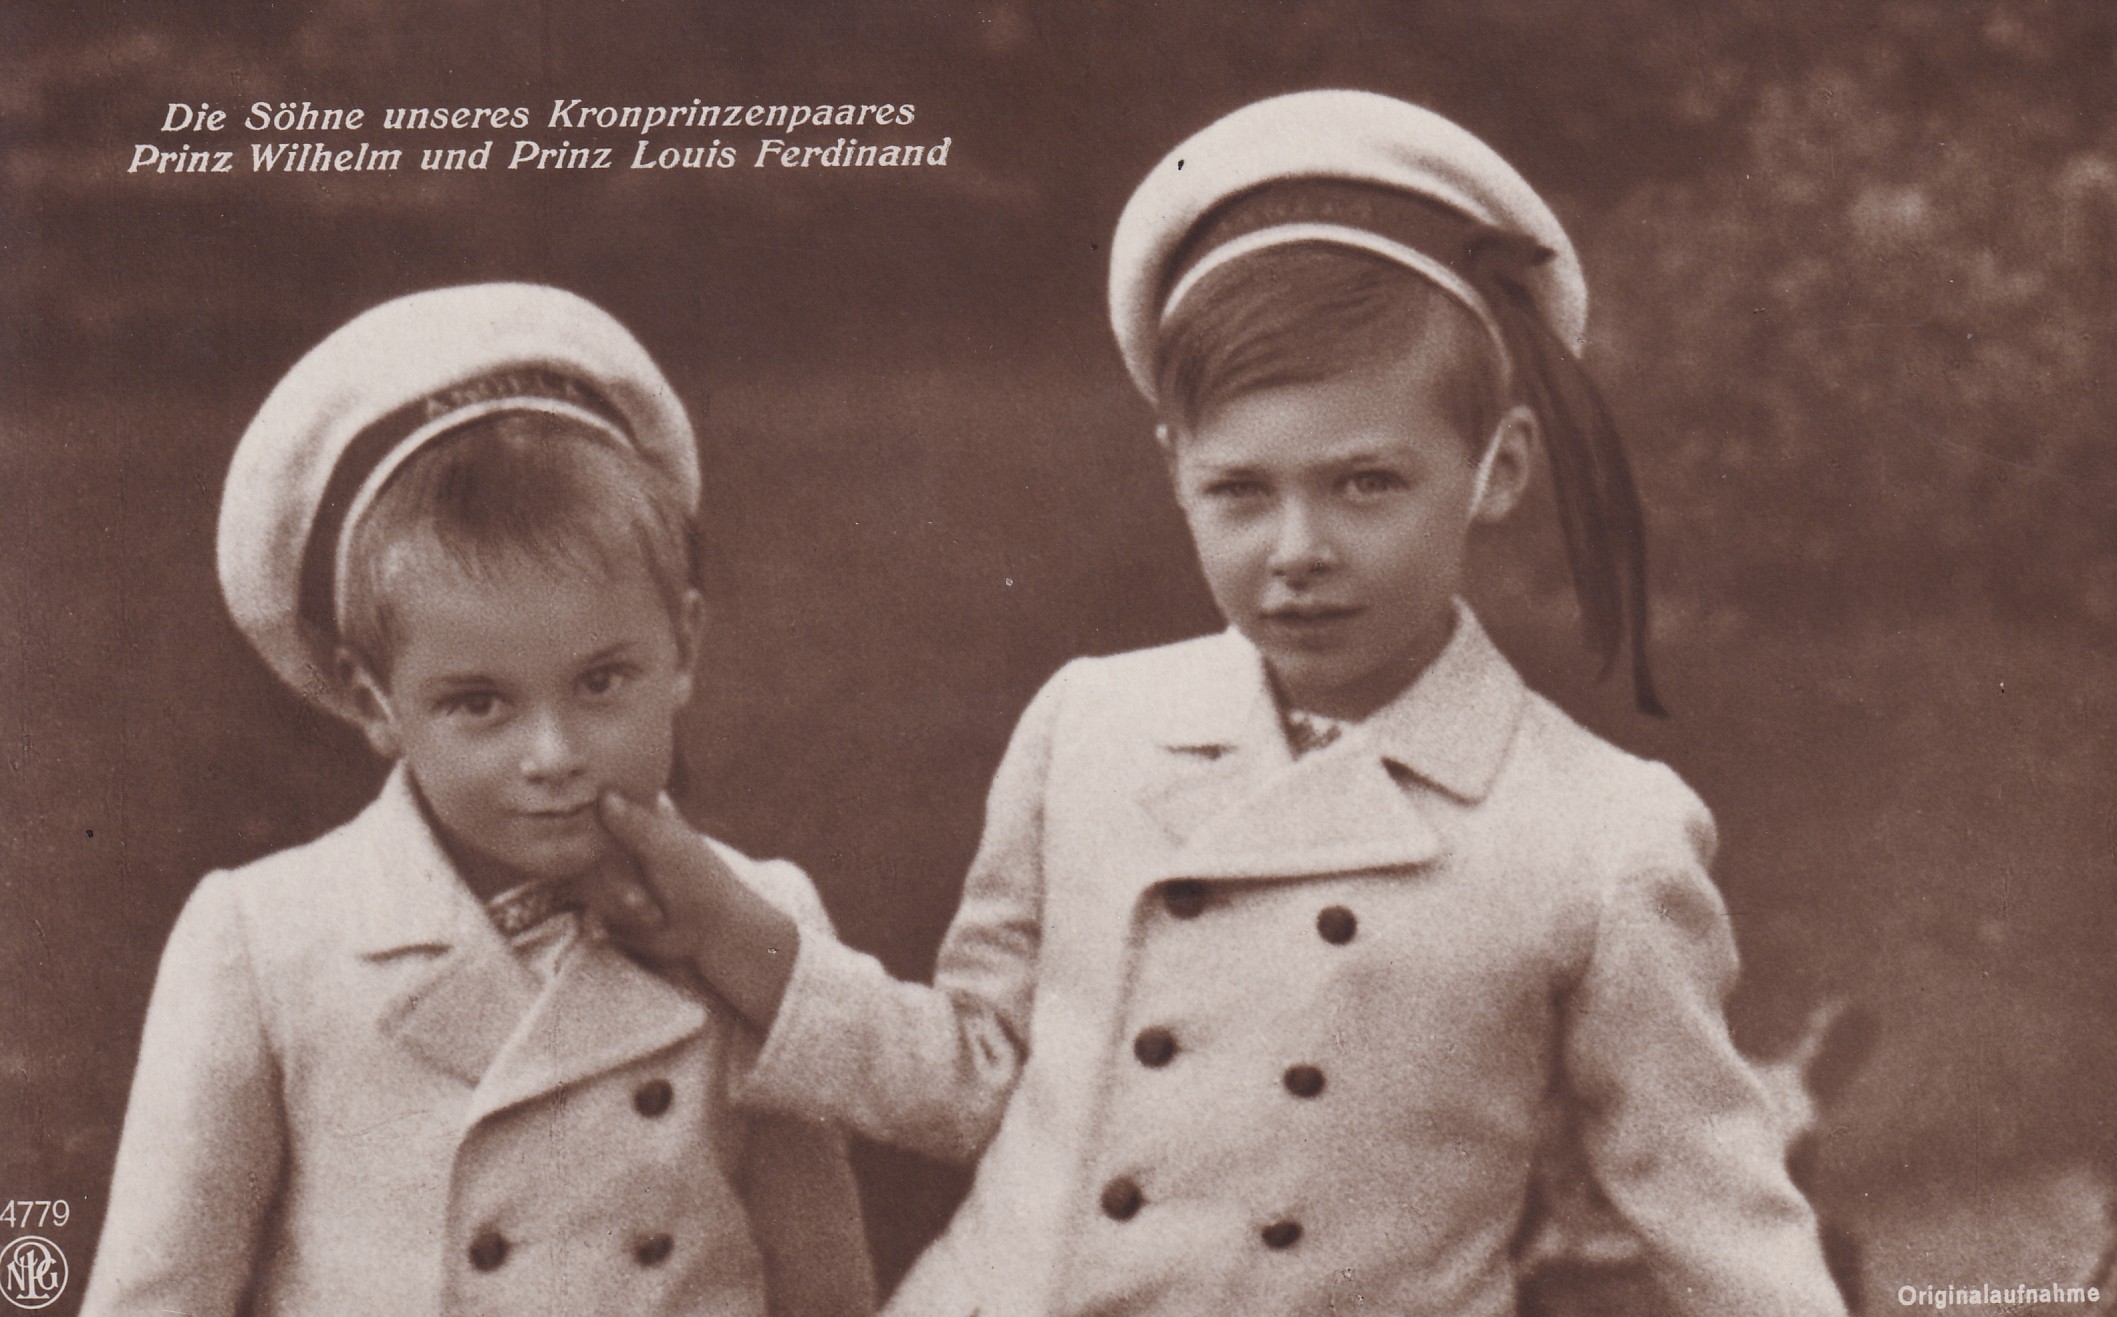 Bildpostkarte mit den beiden ältesten Söhnen des Kronprinzenpaares, 1910 (Schloß Wernigerode GmbH RR-F)